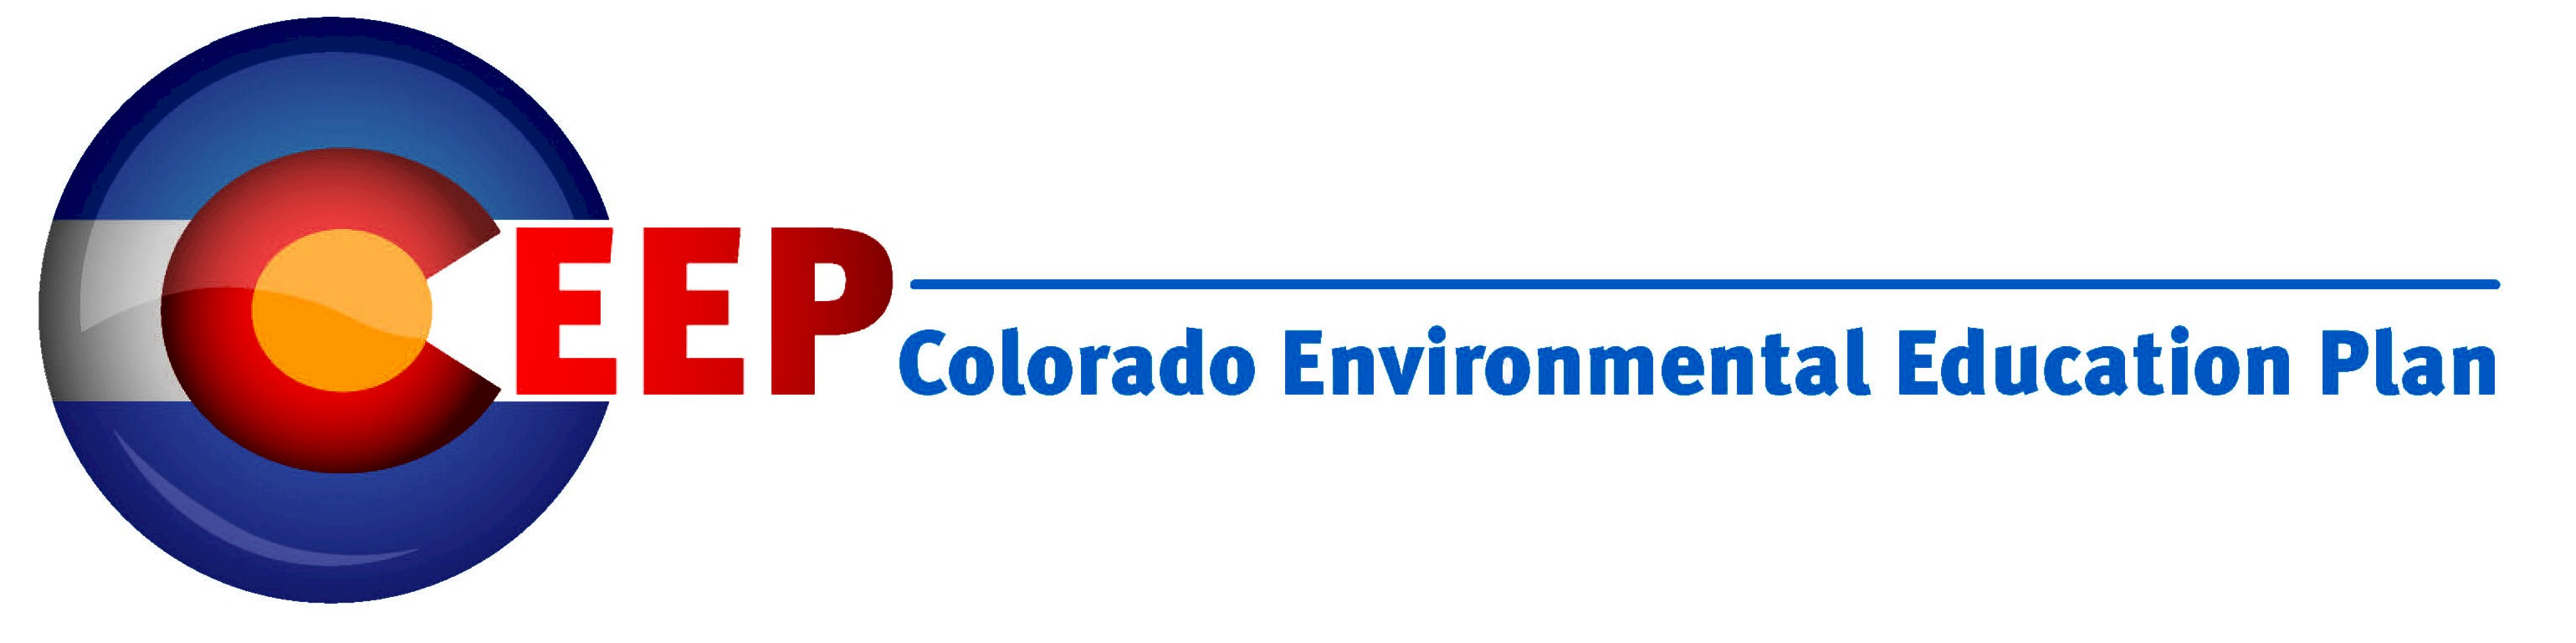 Colorado Environmental Education Plan or CEEP logo